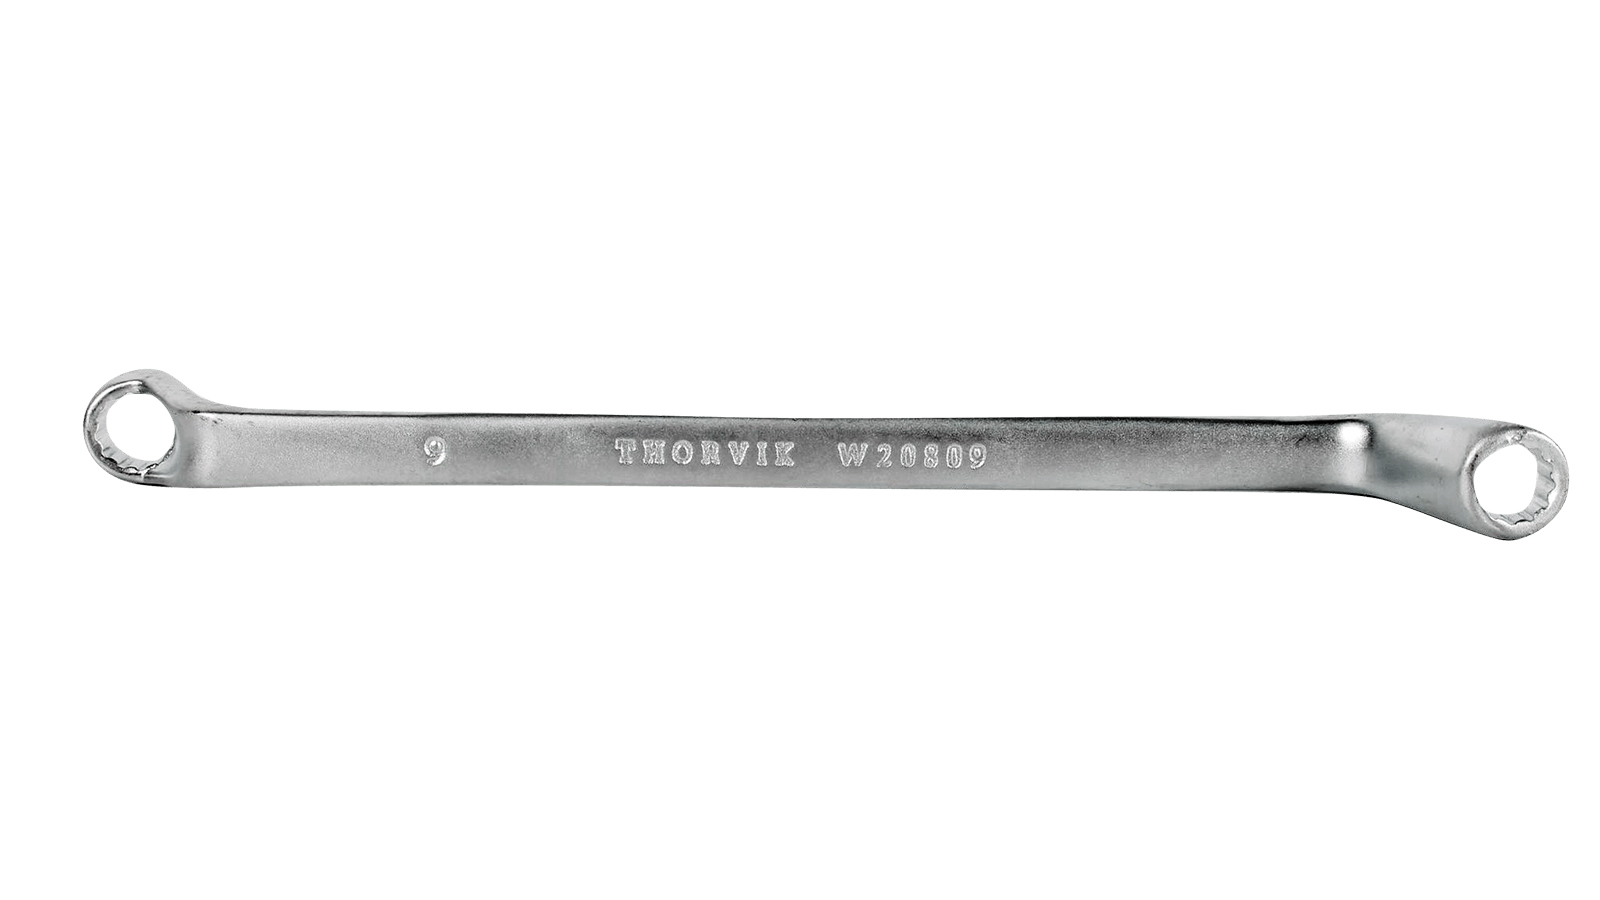 Ключ Накидной  8 Х 9 Thorvik Серии Arc THORVIK арт. W20809 телескопический баллонный ключ thorvik